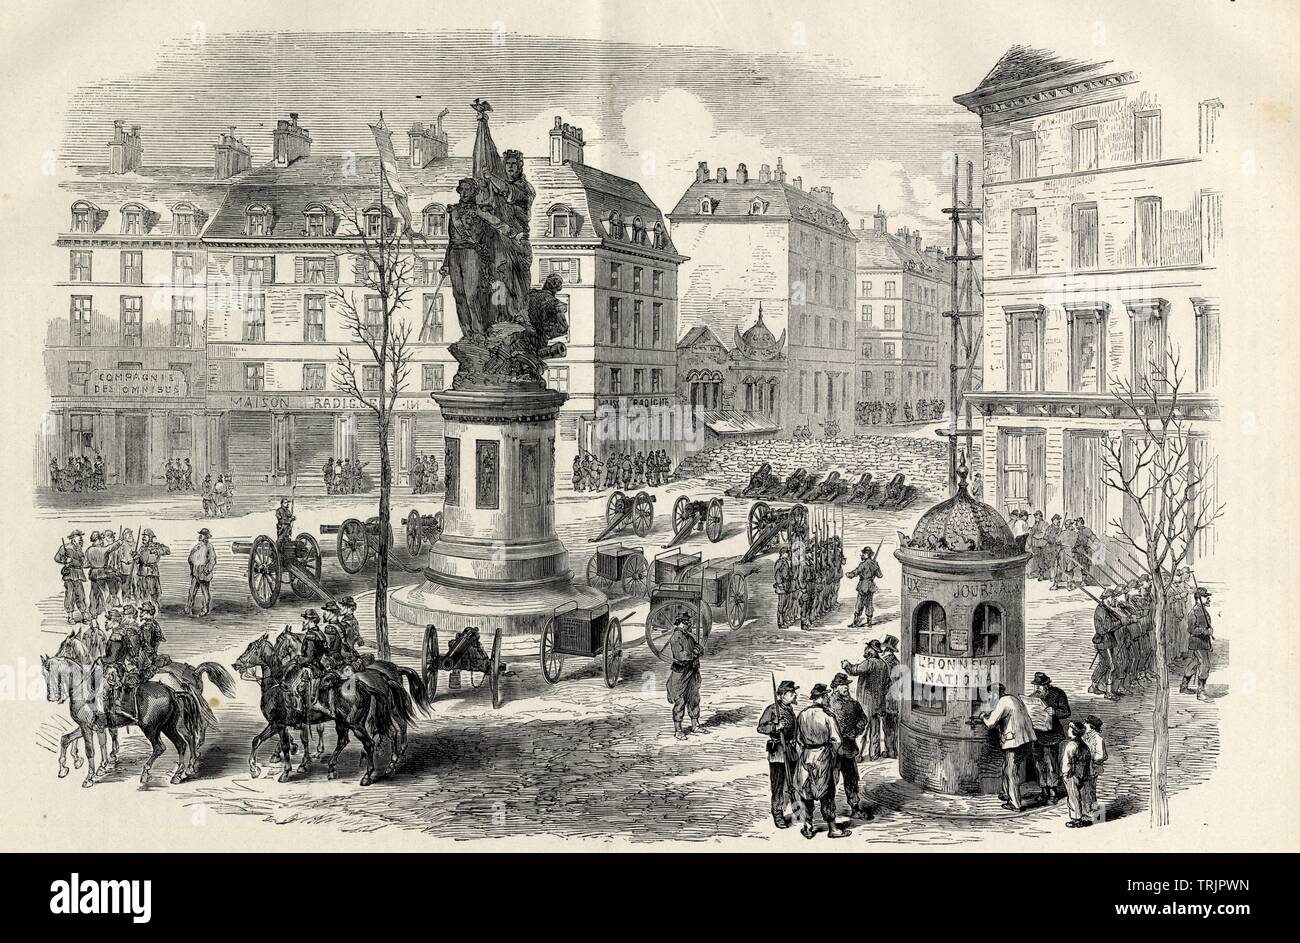 SOUVENIRS DE LA COMMUNE. LE PARC D'ARTILLERIE DE LA PLACE CLICHY PENDANT L'Aufstand. 1871 Stockfoto